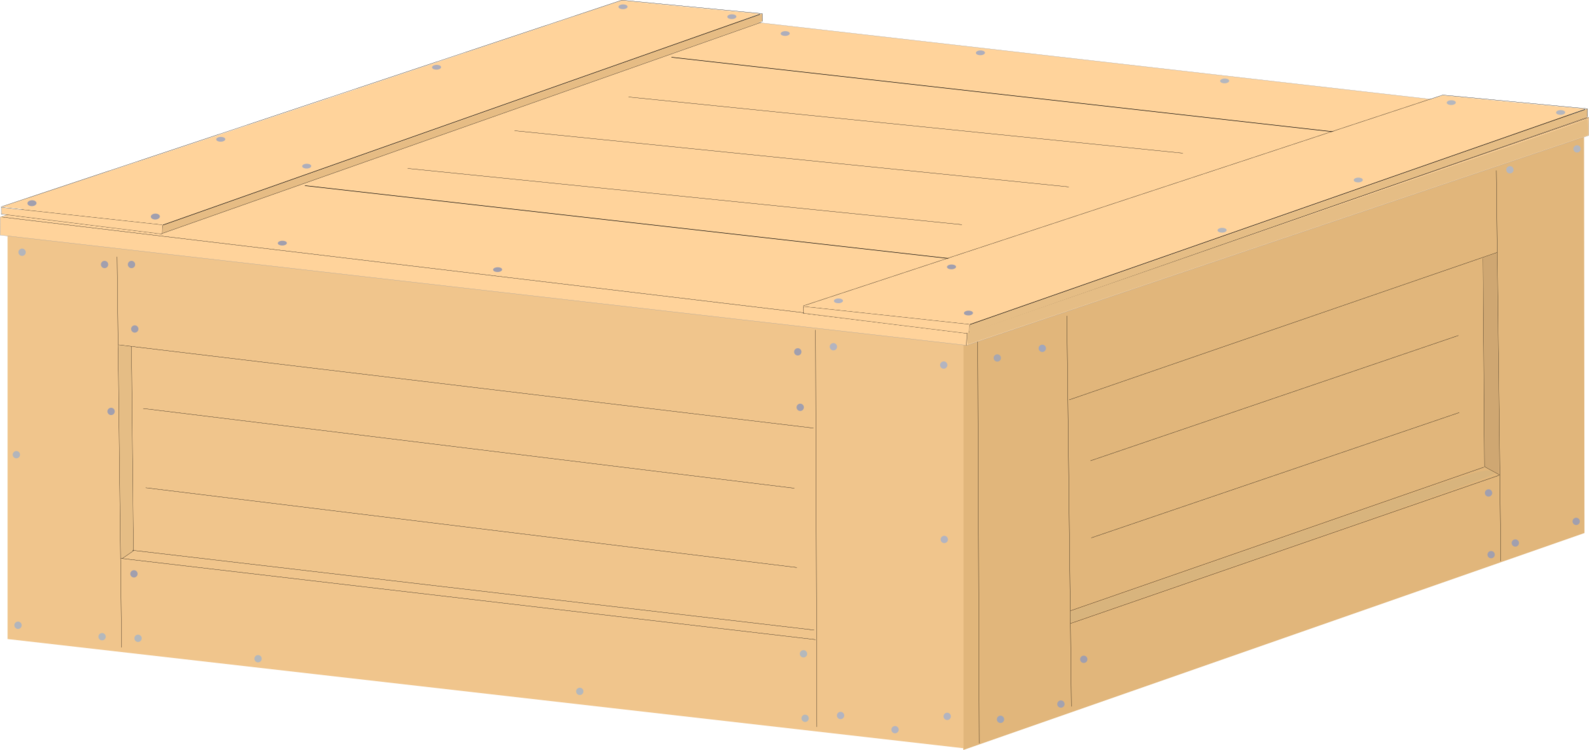 Box,Angle,Lumber